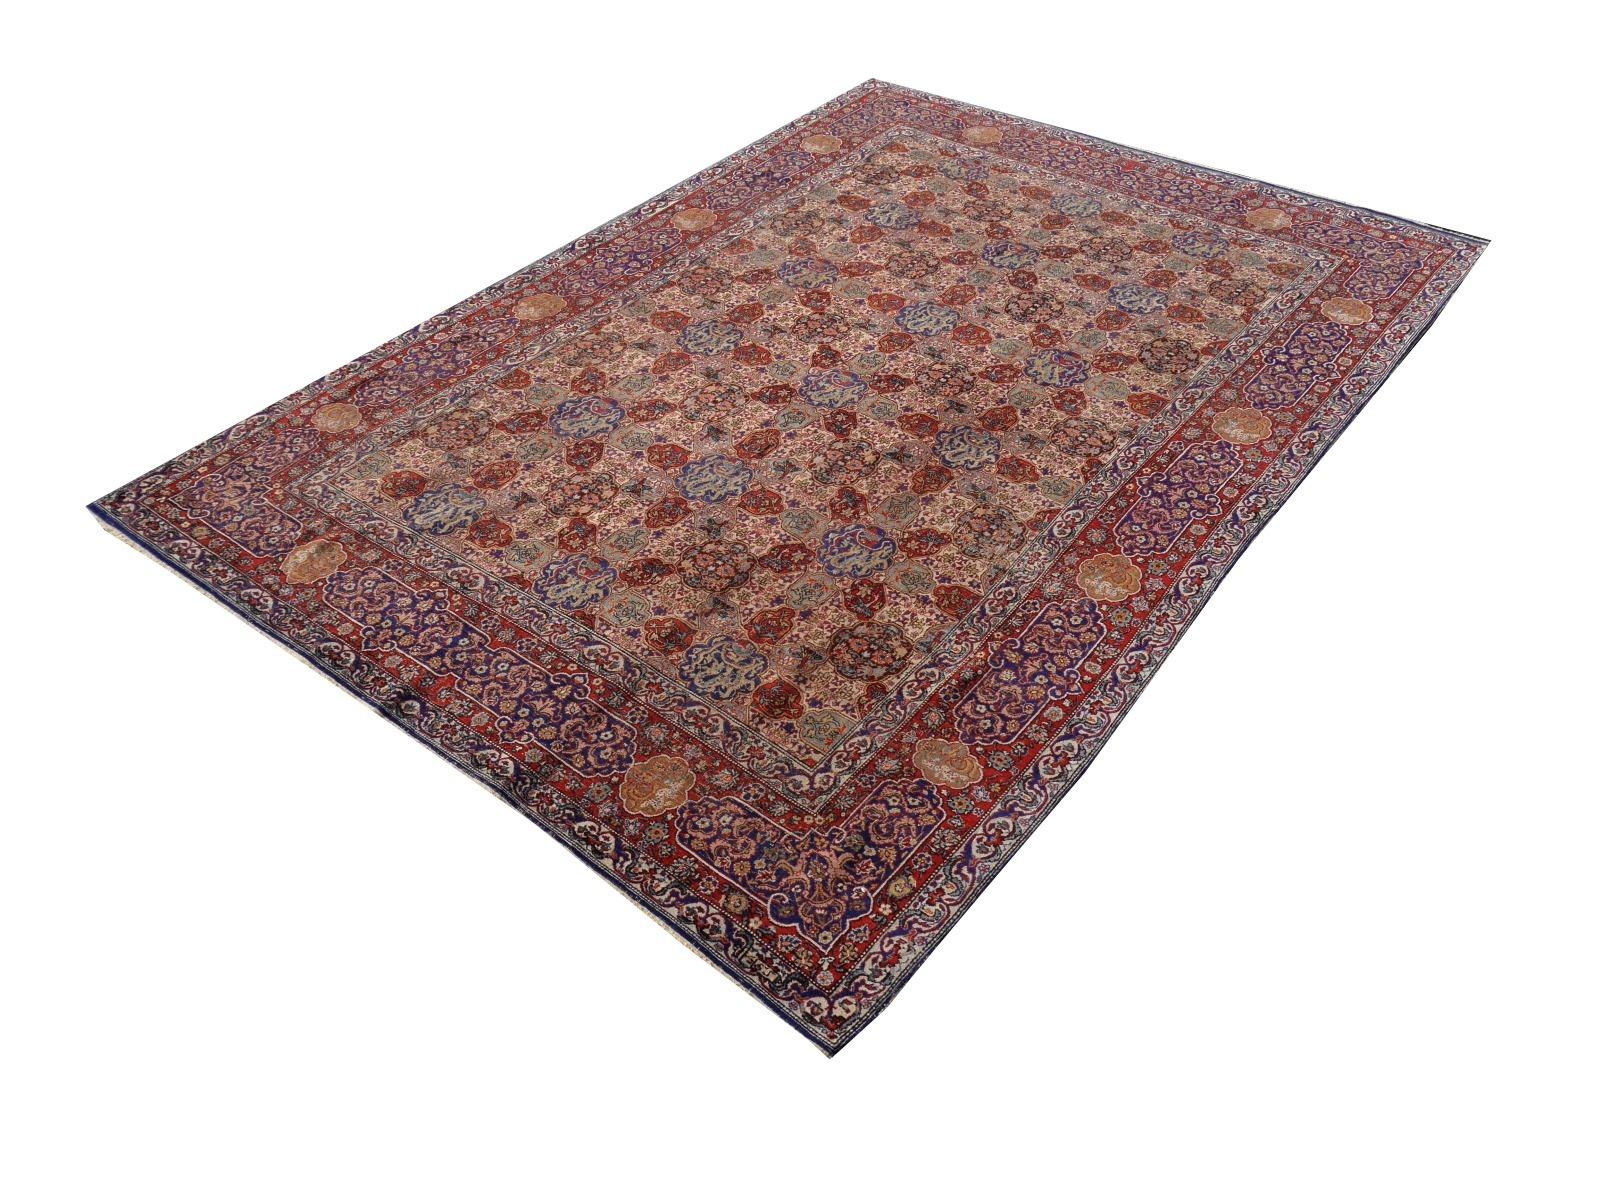 Ce magnifique tapis provient de l'ouest de la Turquie. 
Ce tapis provient de la ville de Hereke, également connue pour ses tapis en soie fine.
Il est d'une qualité merveilleuse avec un lustre fin et des couleurs vibrantes. L'état est bon avec une